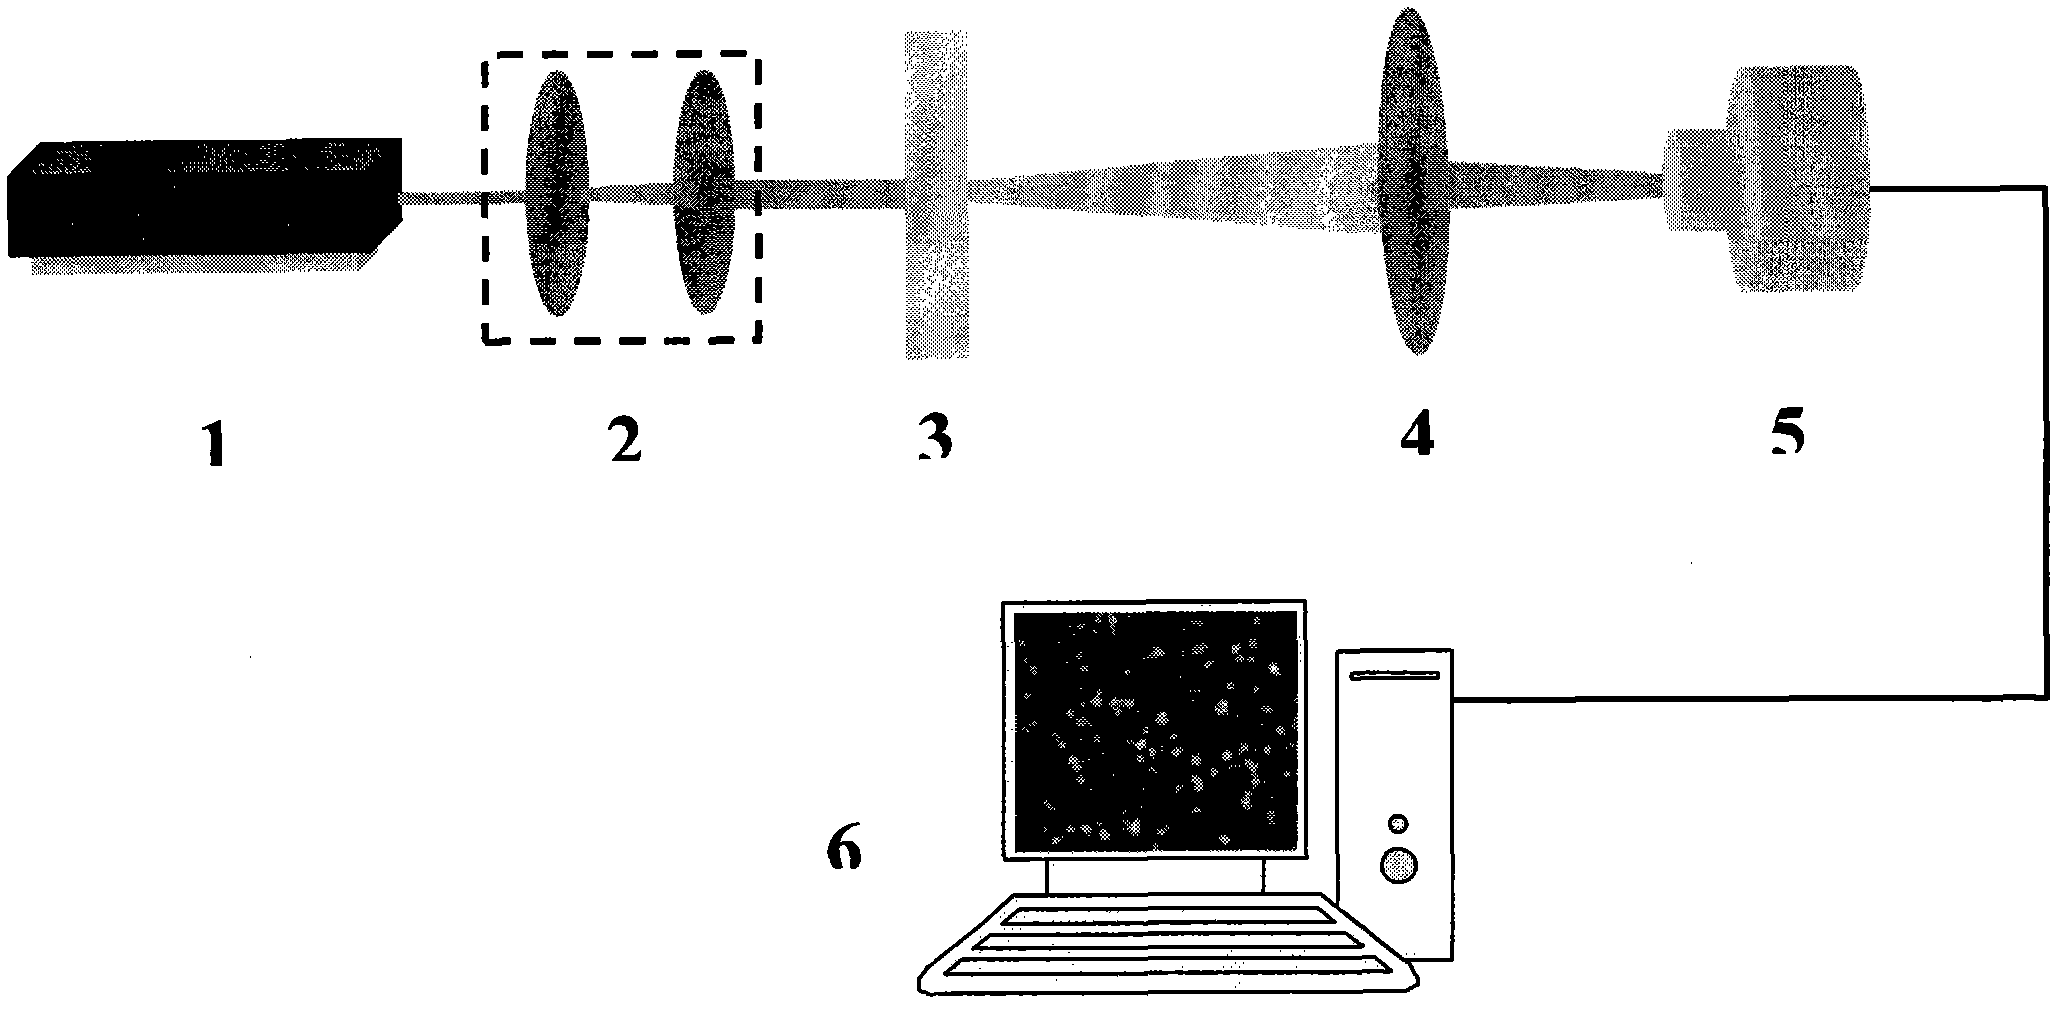 Phase vortex based digital speckle correlation measurement method